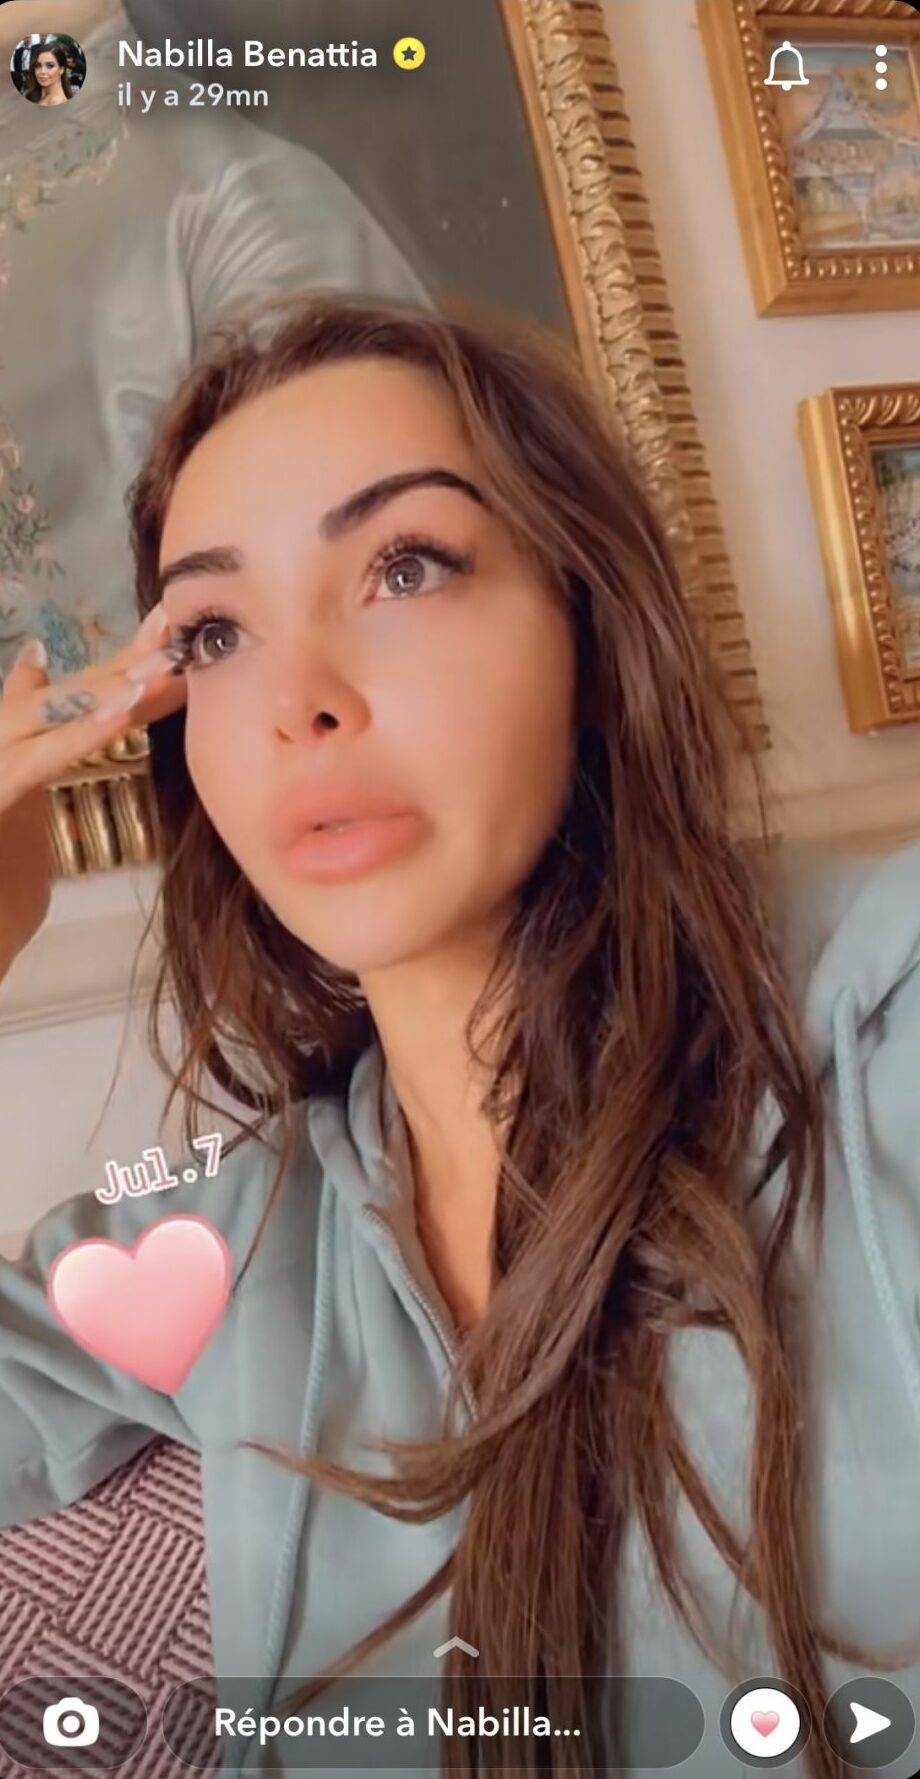  Nabilla s'exprime en pleurs @Snapchat